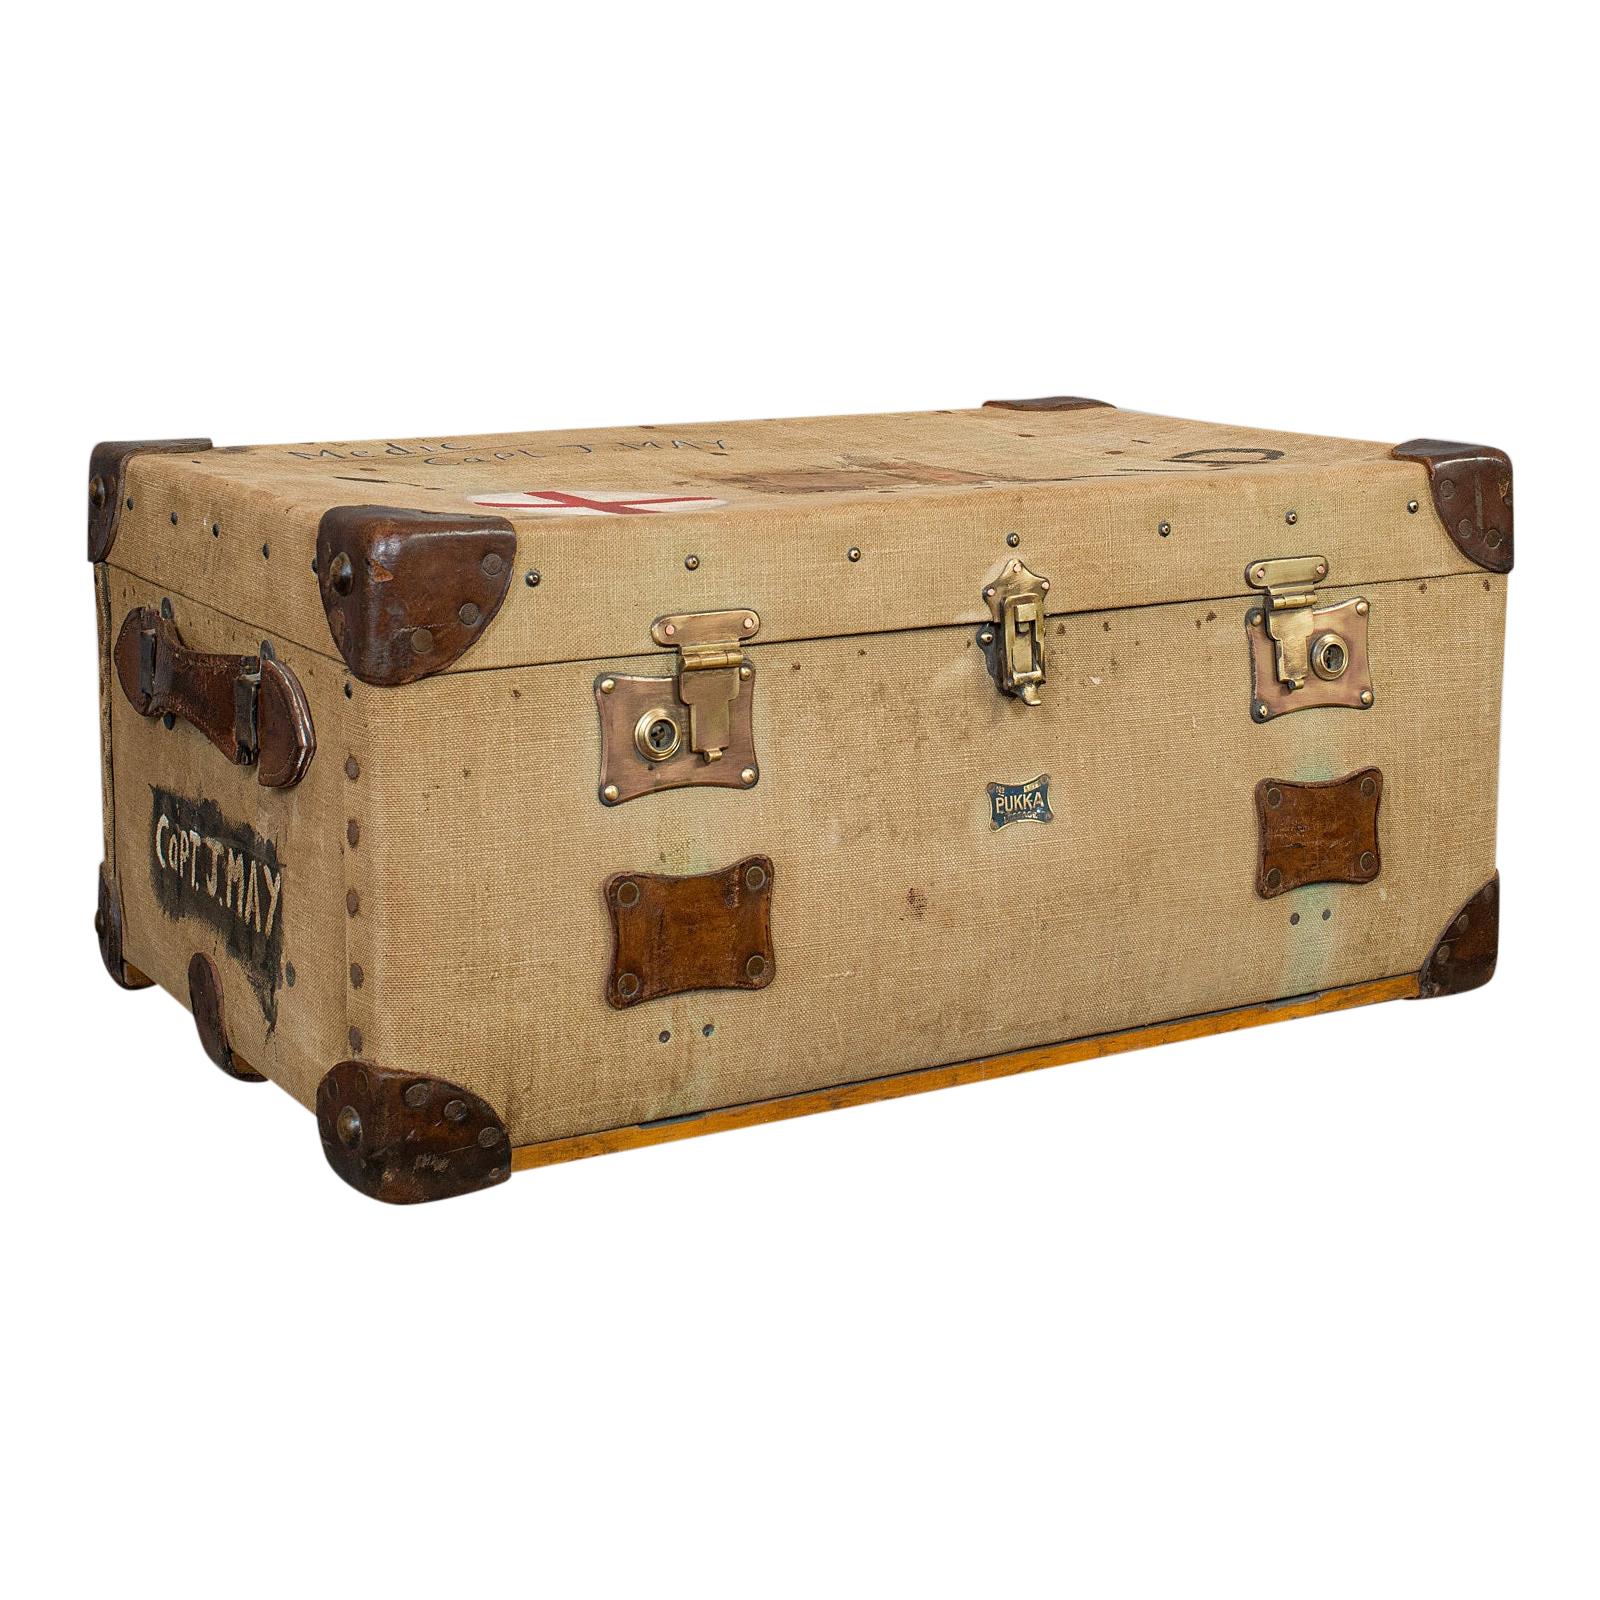 Antique Shipping Trunk, English, Canvas Travel Case, Pukka Luggage, Edwardian